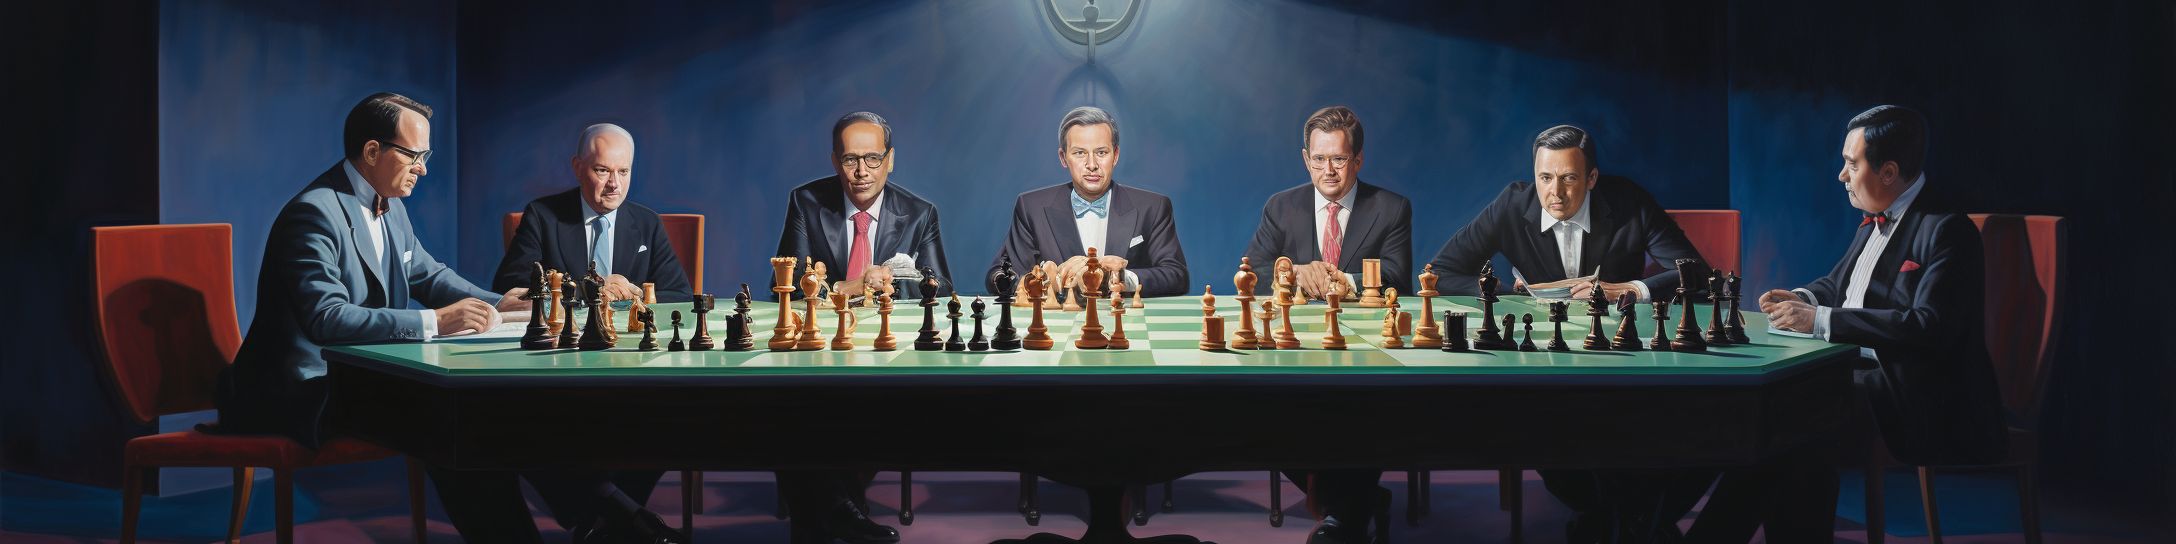 Les Champions du Monde d'échecs à travers le Temps